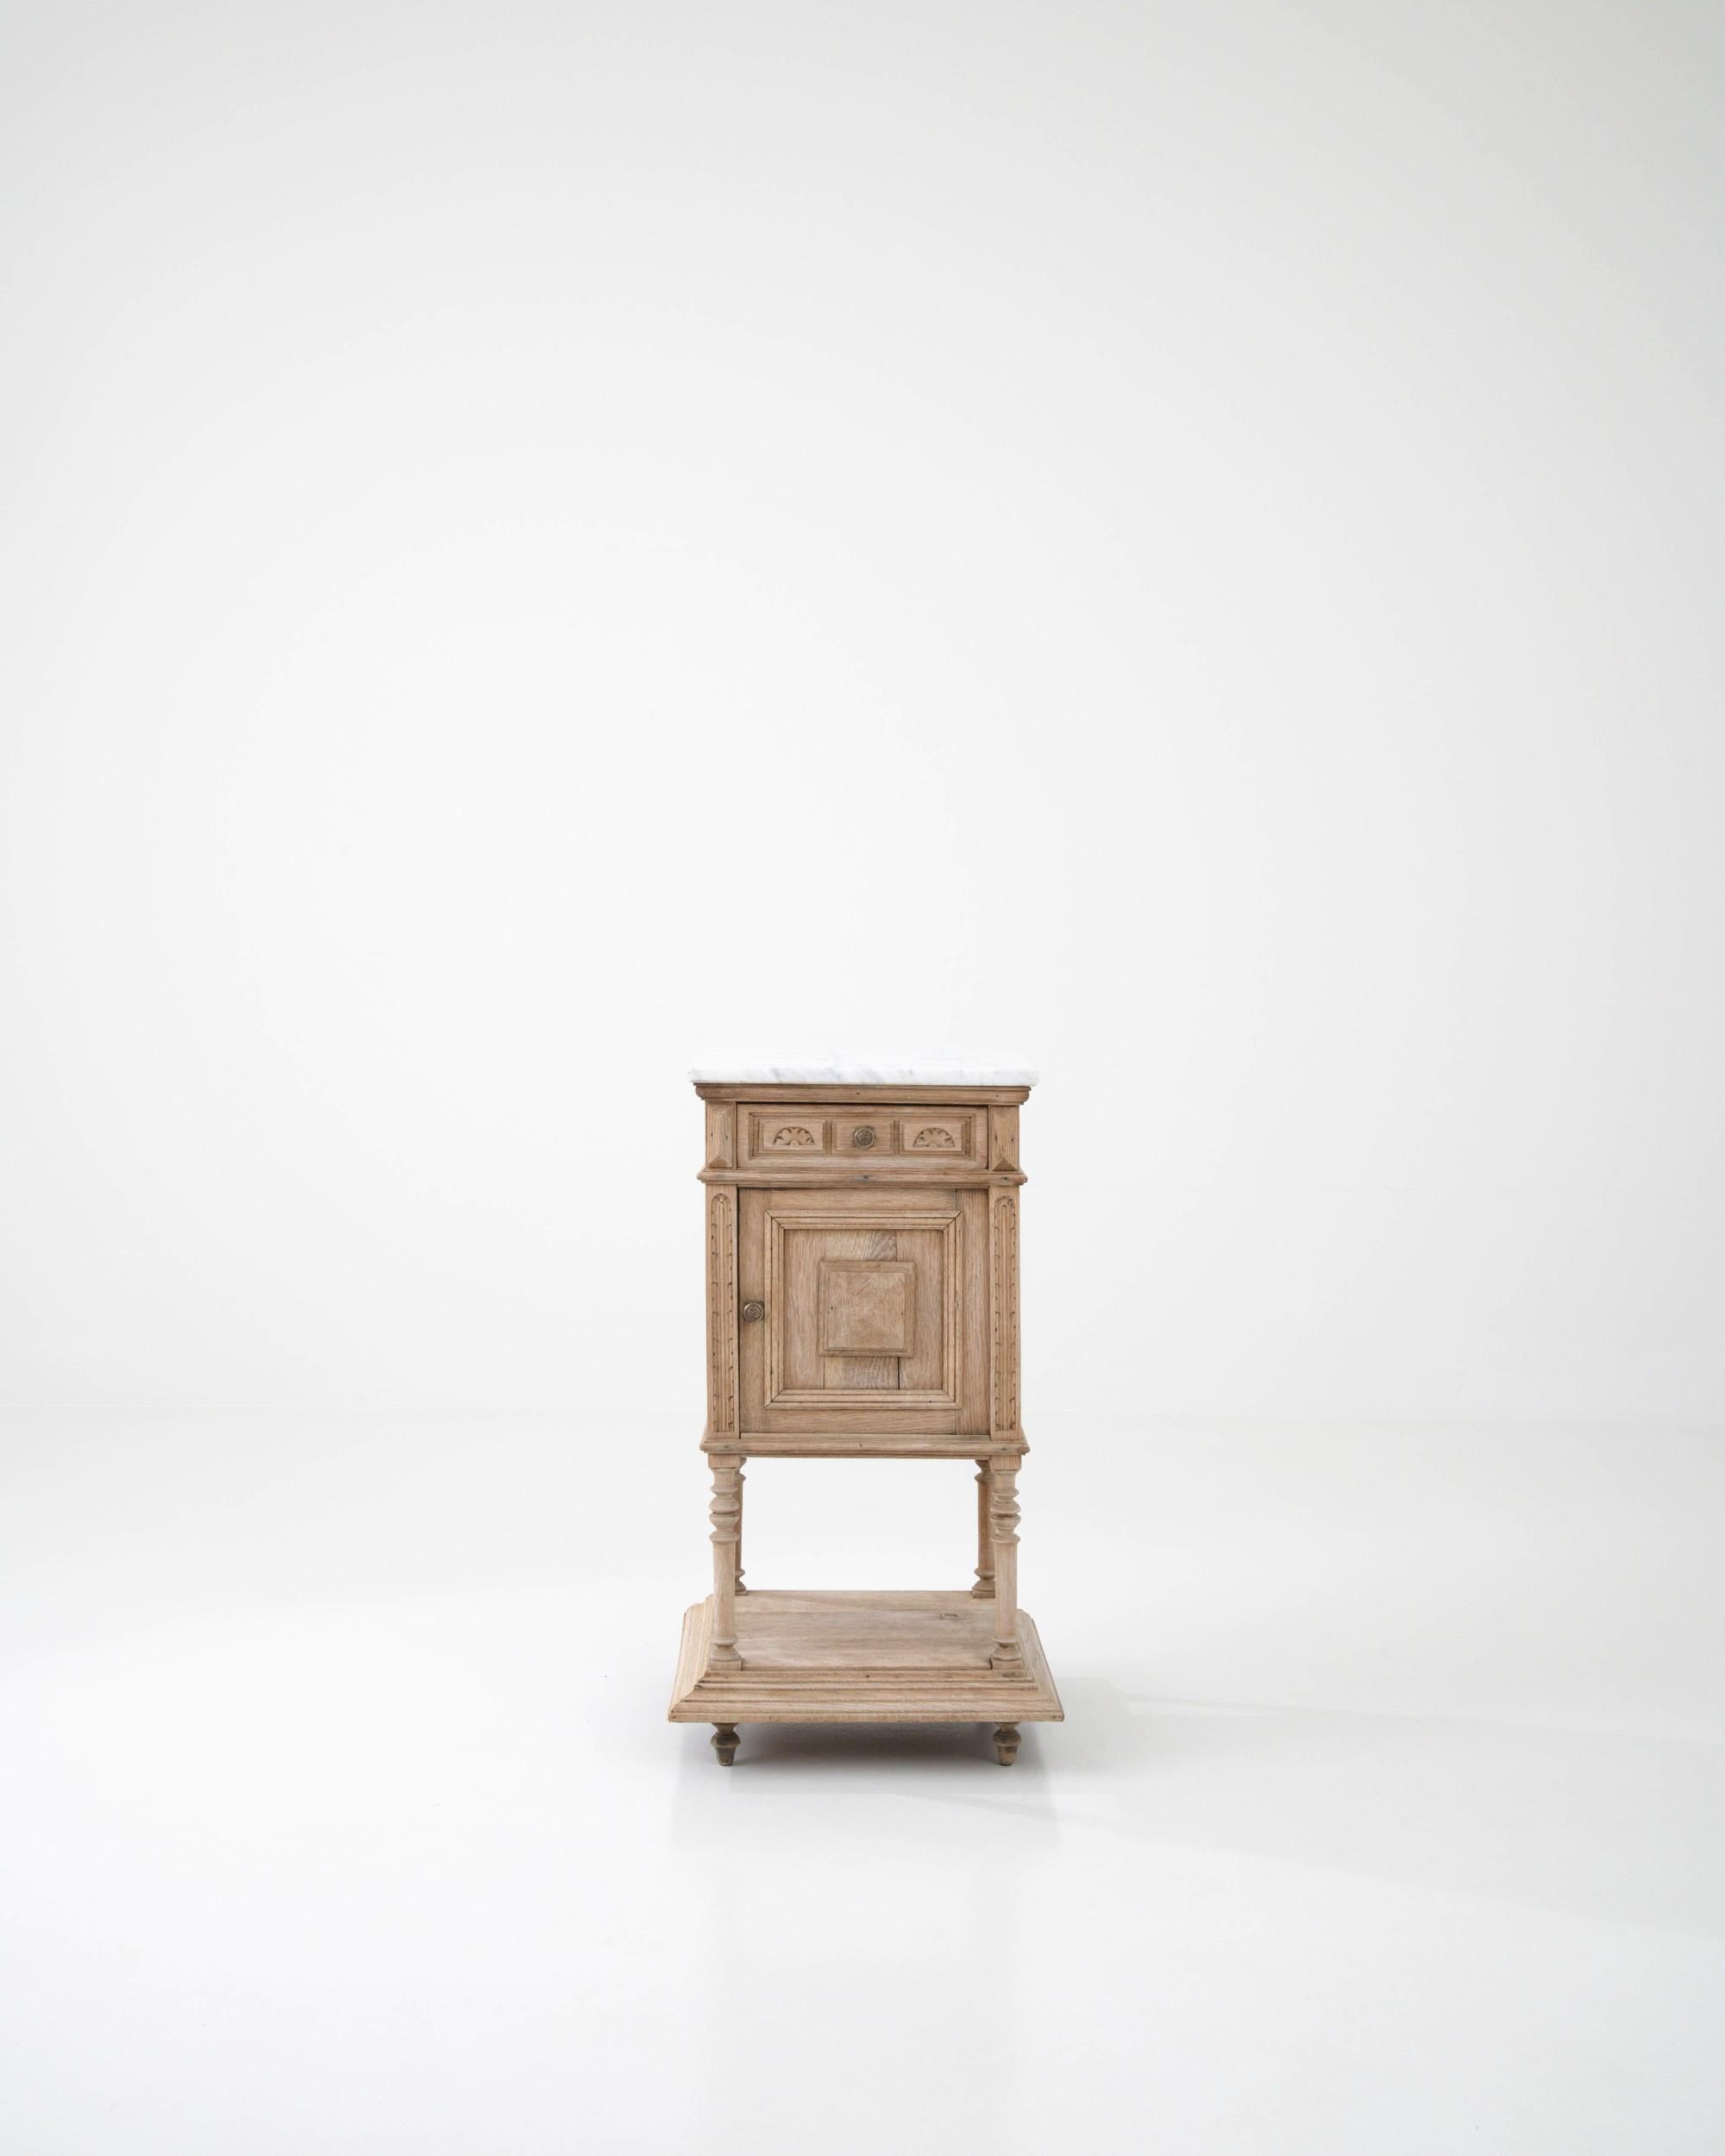 Ein Nachttisch aus Eiche, hergestellt in Frankreich um 1900. Dieser traditionell gefertigte Nachttisch ist mit einer Marmorplatte verziert, die ein Gefühl von Ruhe und raffinierter Eleganz ausstrahlt. Wolkengraue Adern ziehen sich durch die